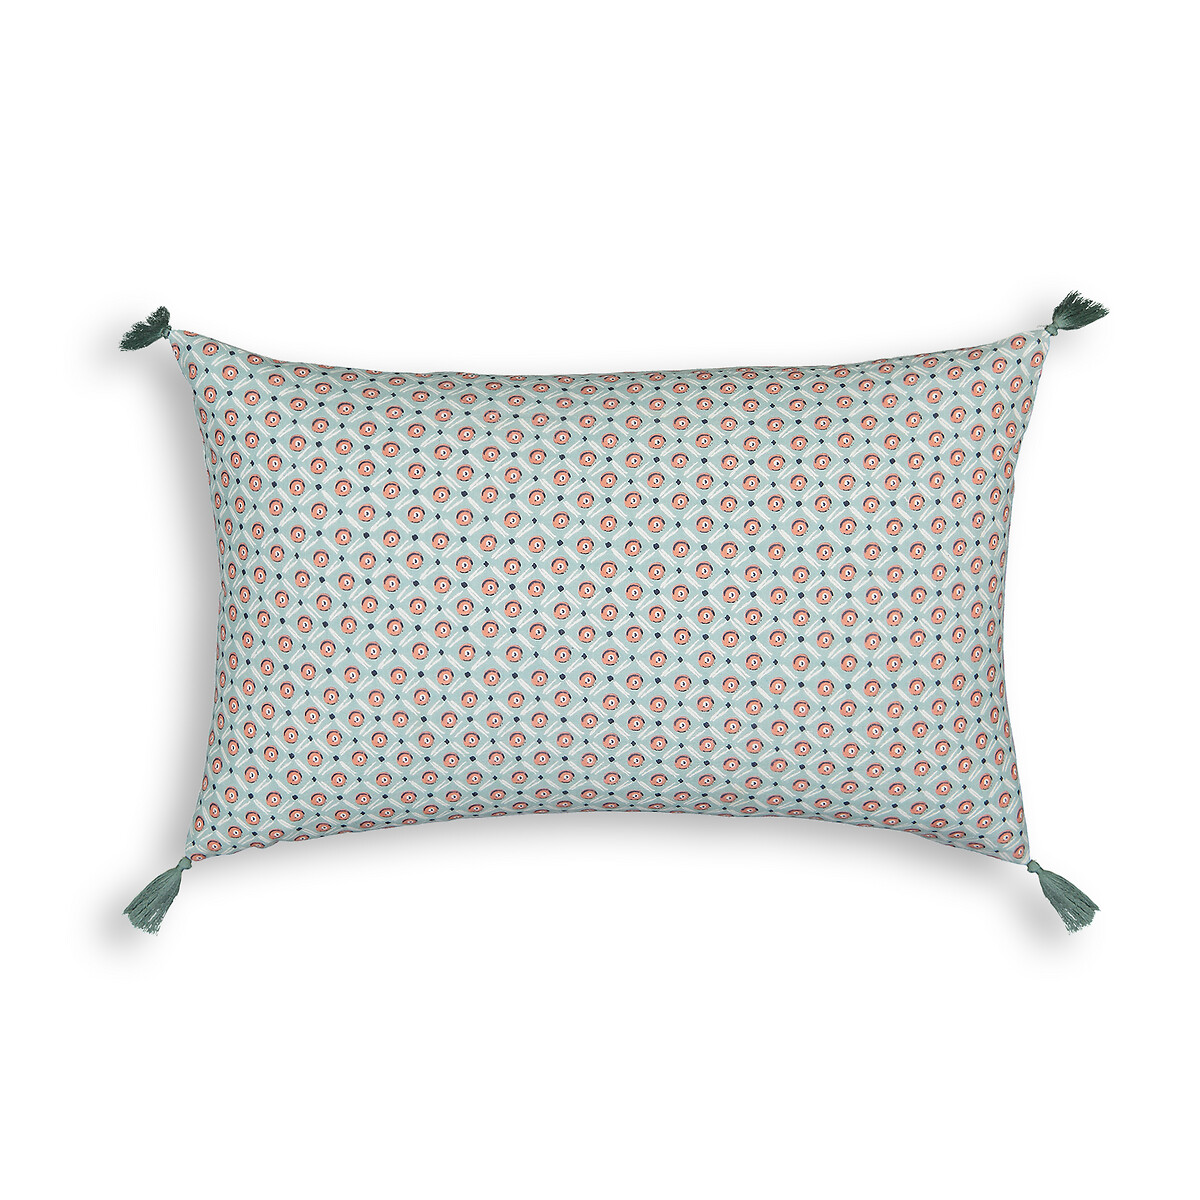 Чехол Для подушки из осветленного хлопка Grace 50 x 30 см зеленый